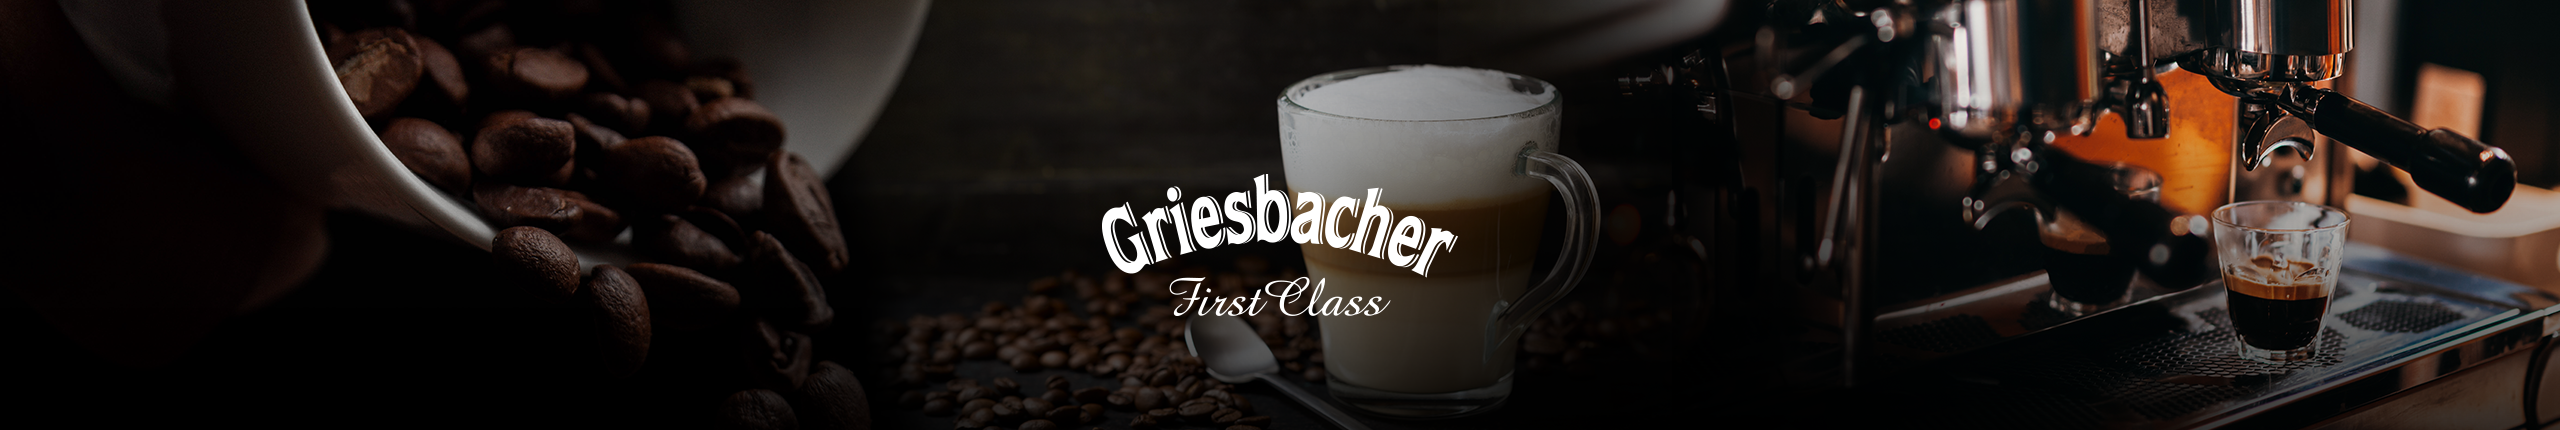 Griesbacher und Kaffee